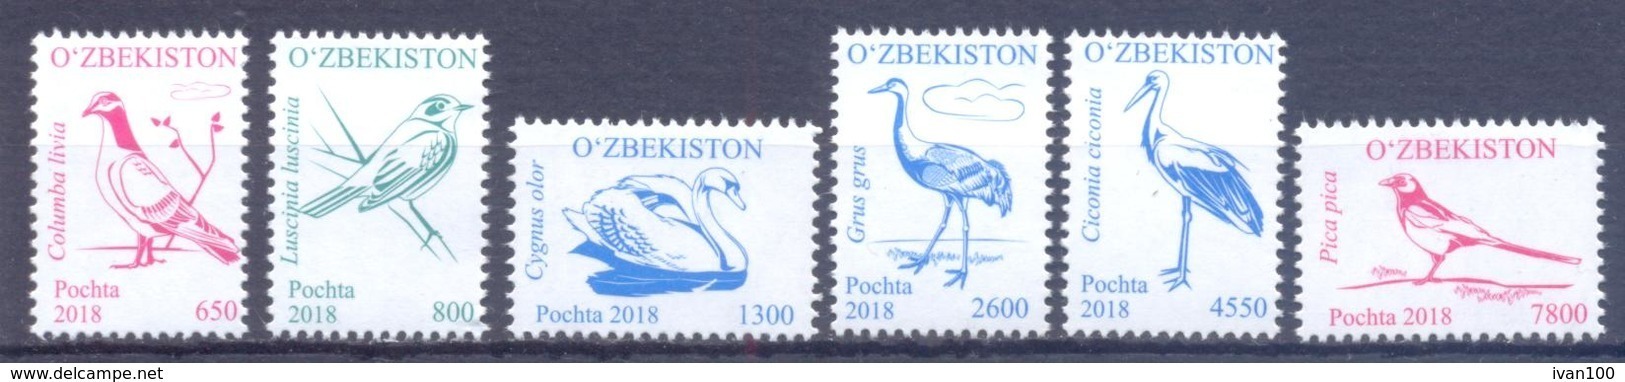 2018. Uzbekistan, Definitives, Birds, Issues IV-V, 6v, Mint/** - Uzbekistan